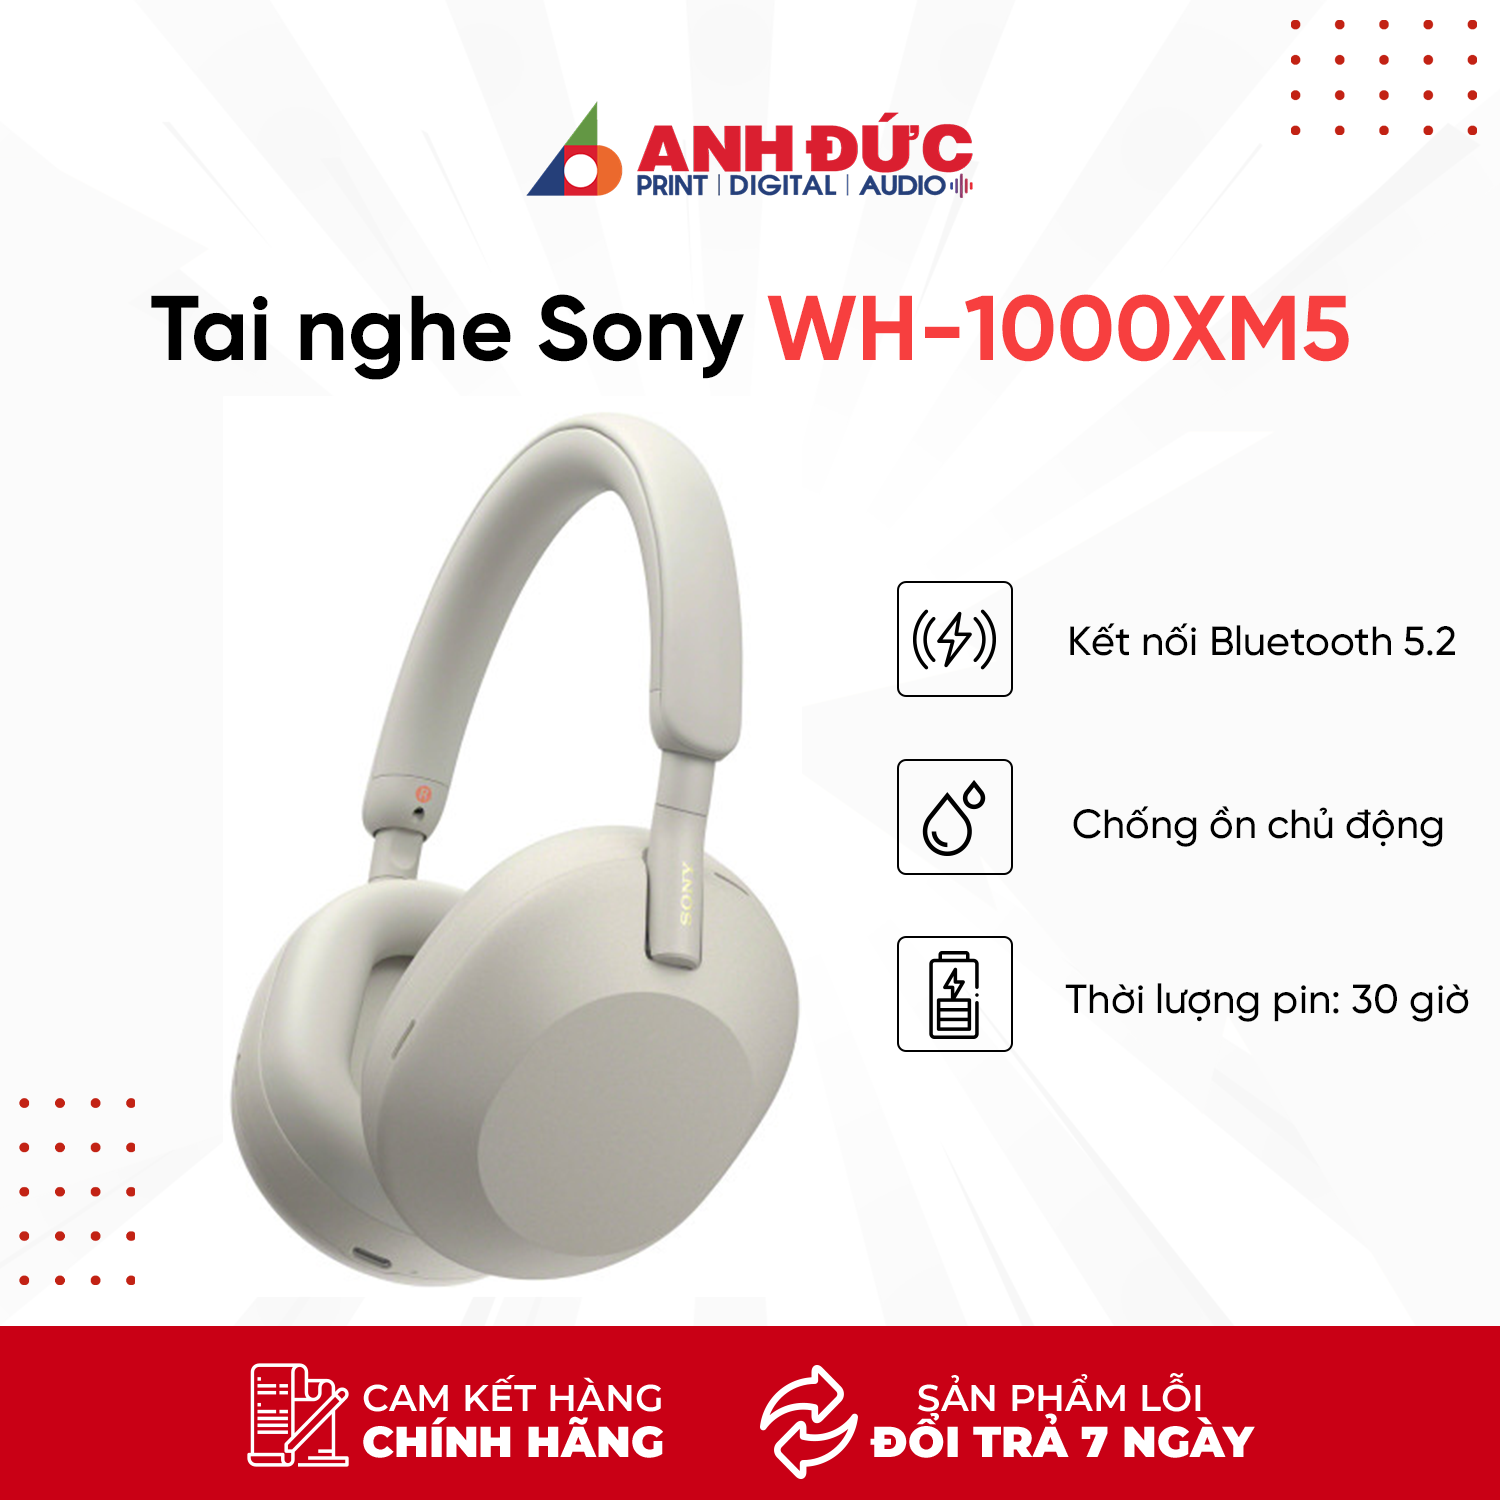 Tai nghe không dây có công nghệ chống ồn Sony WH-1000XM5